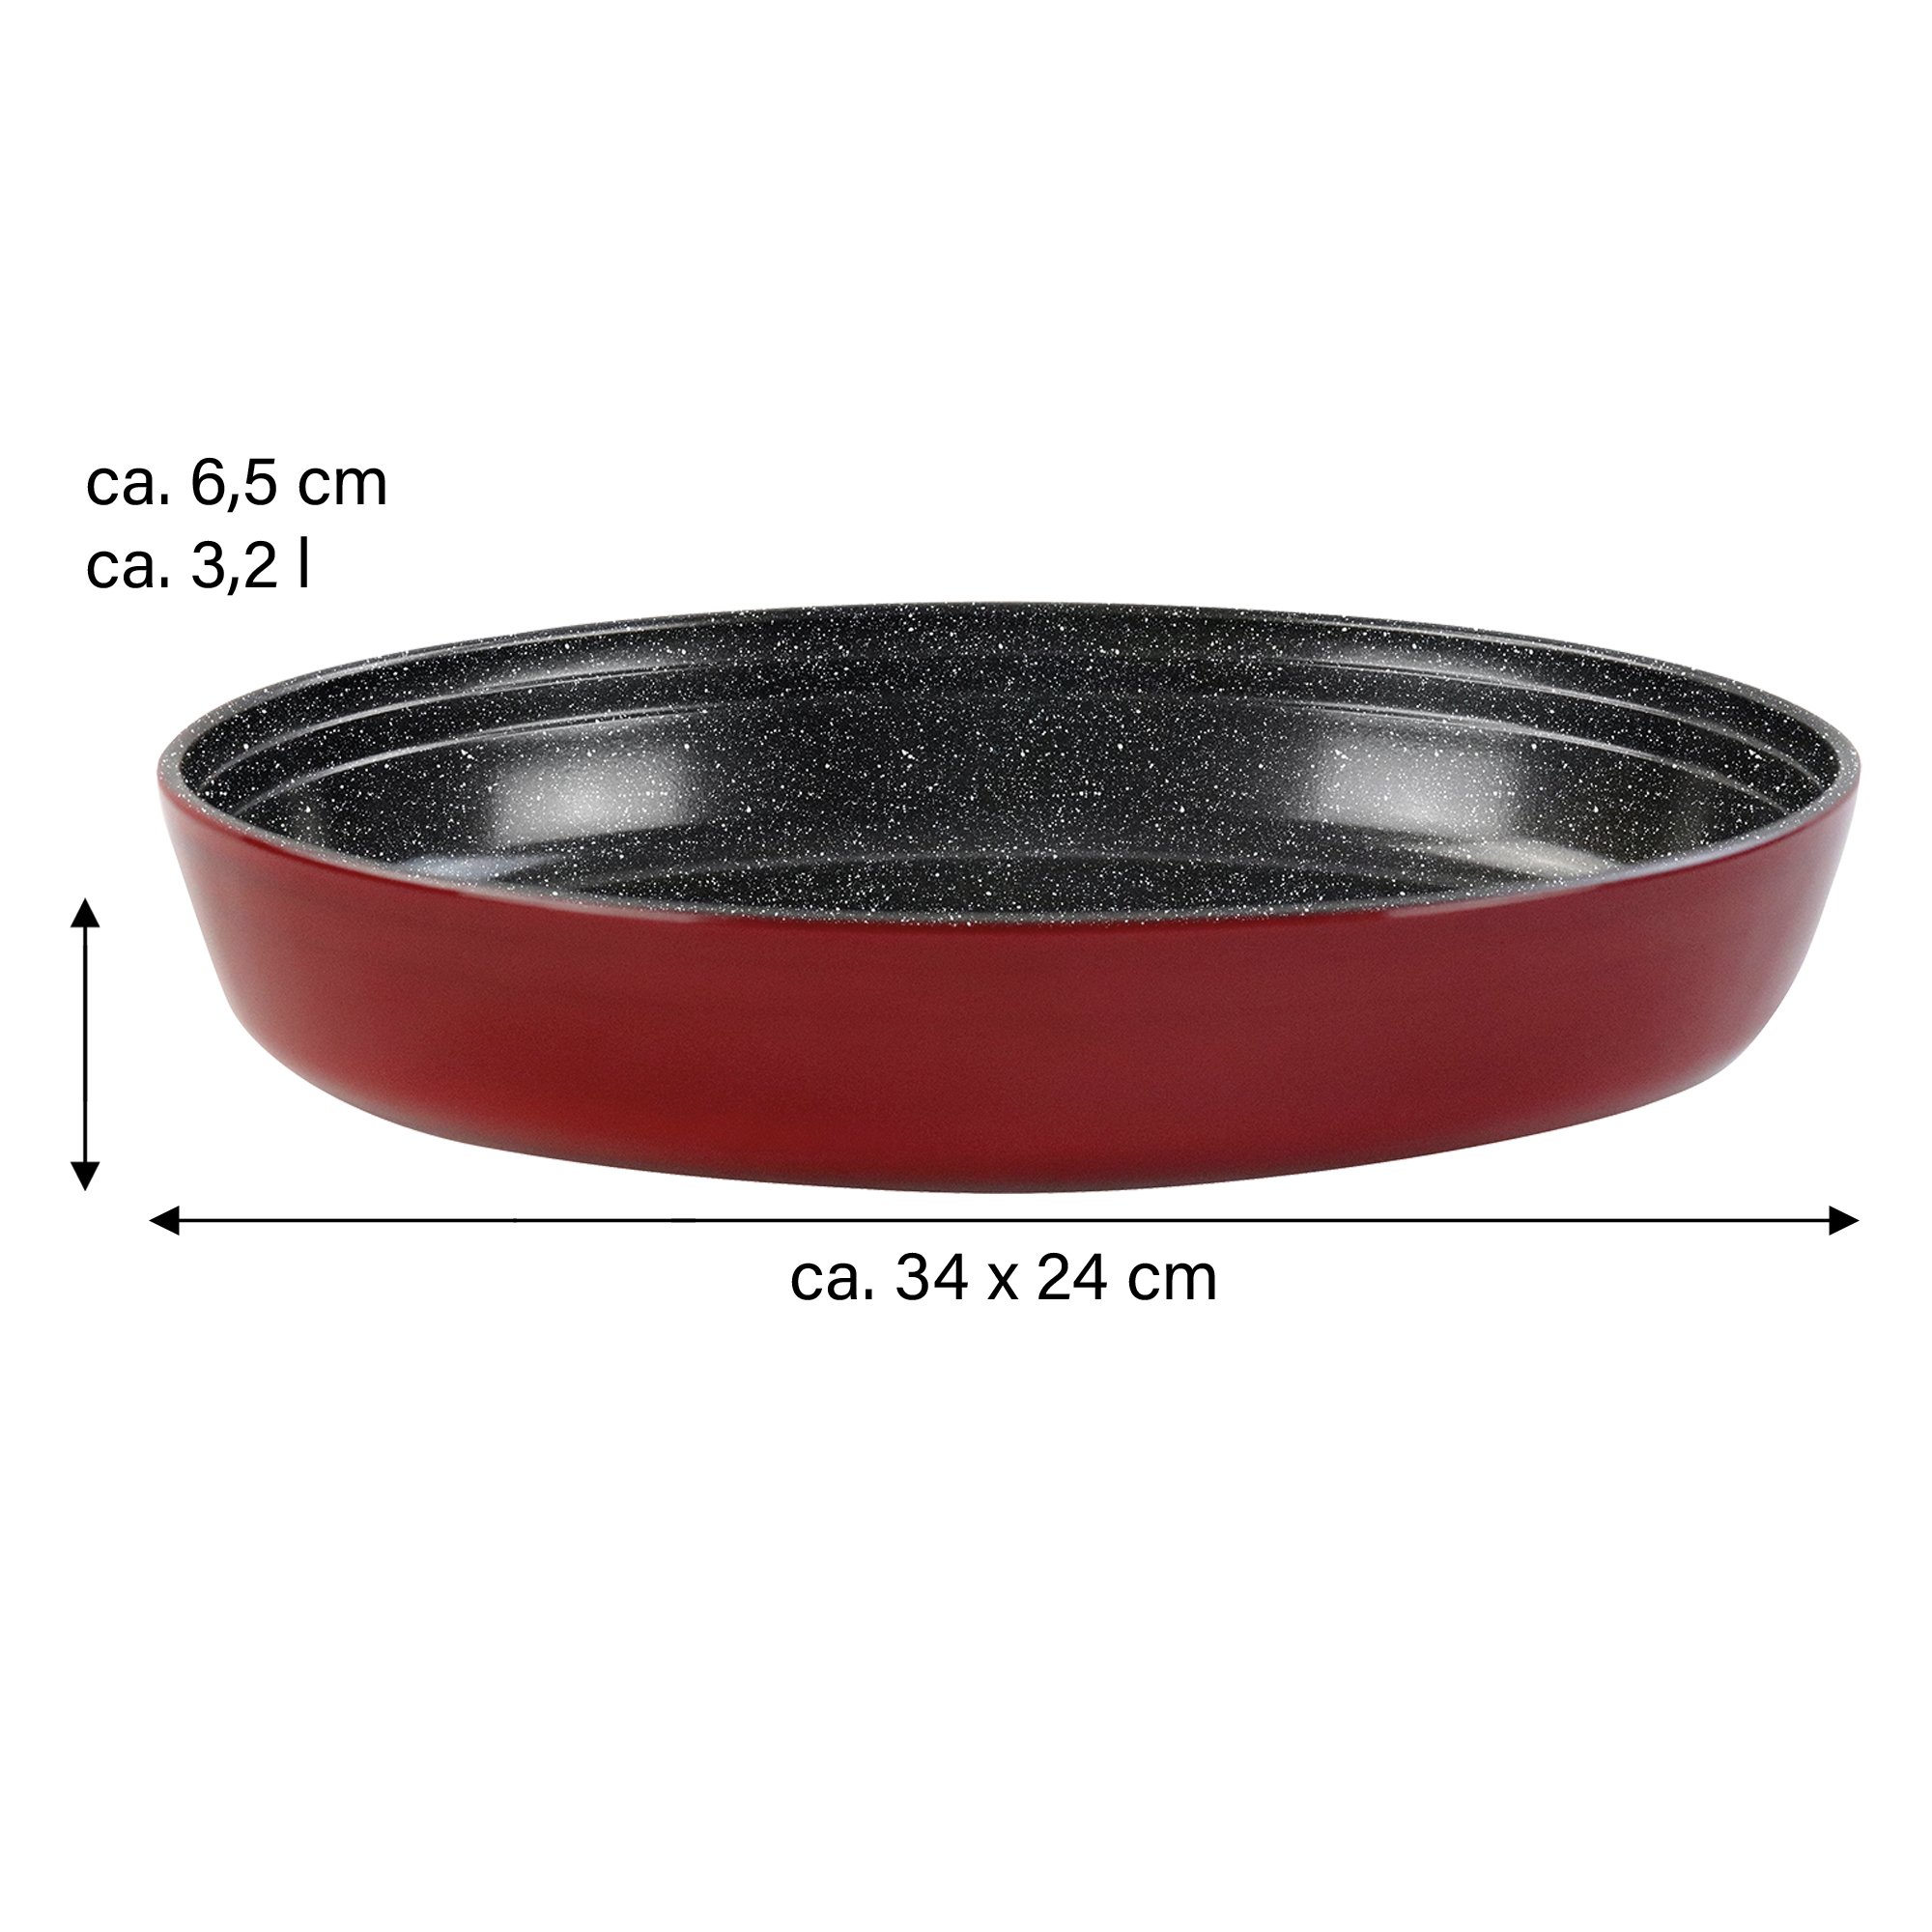 STONELINE® Non-stick glass casserole dish, 34 x 24 cm